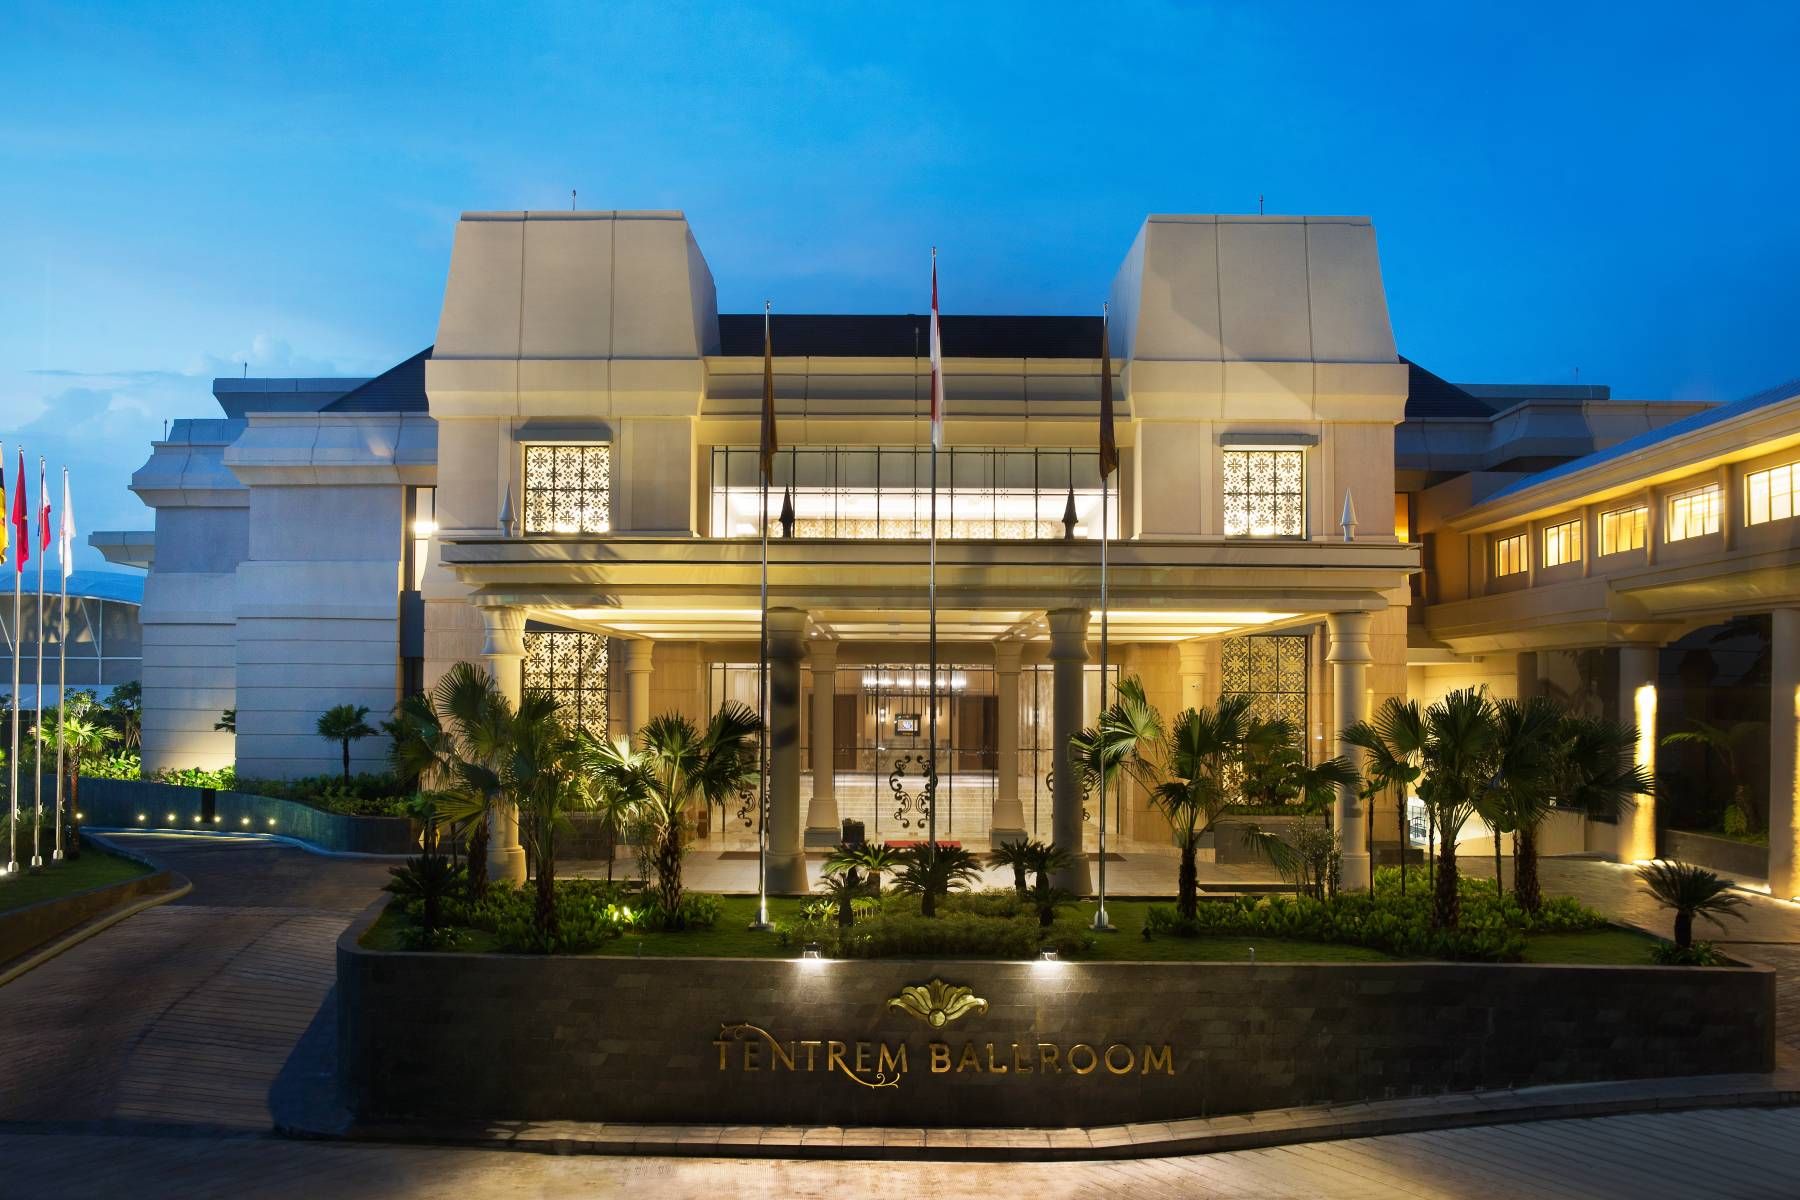 Intip Yuk Tampilan Kamar Hotel Tempat Mariah Carey Menginap di Jogja!